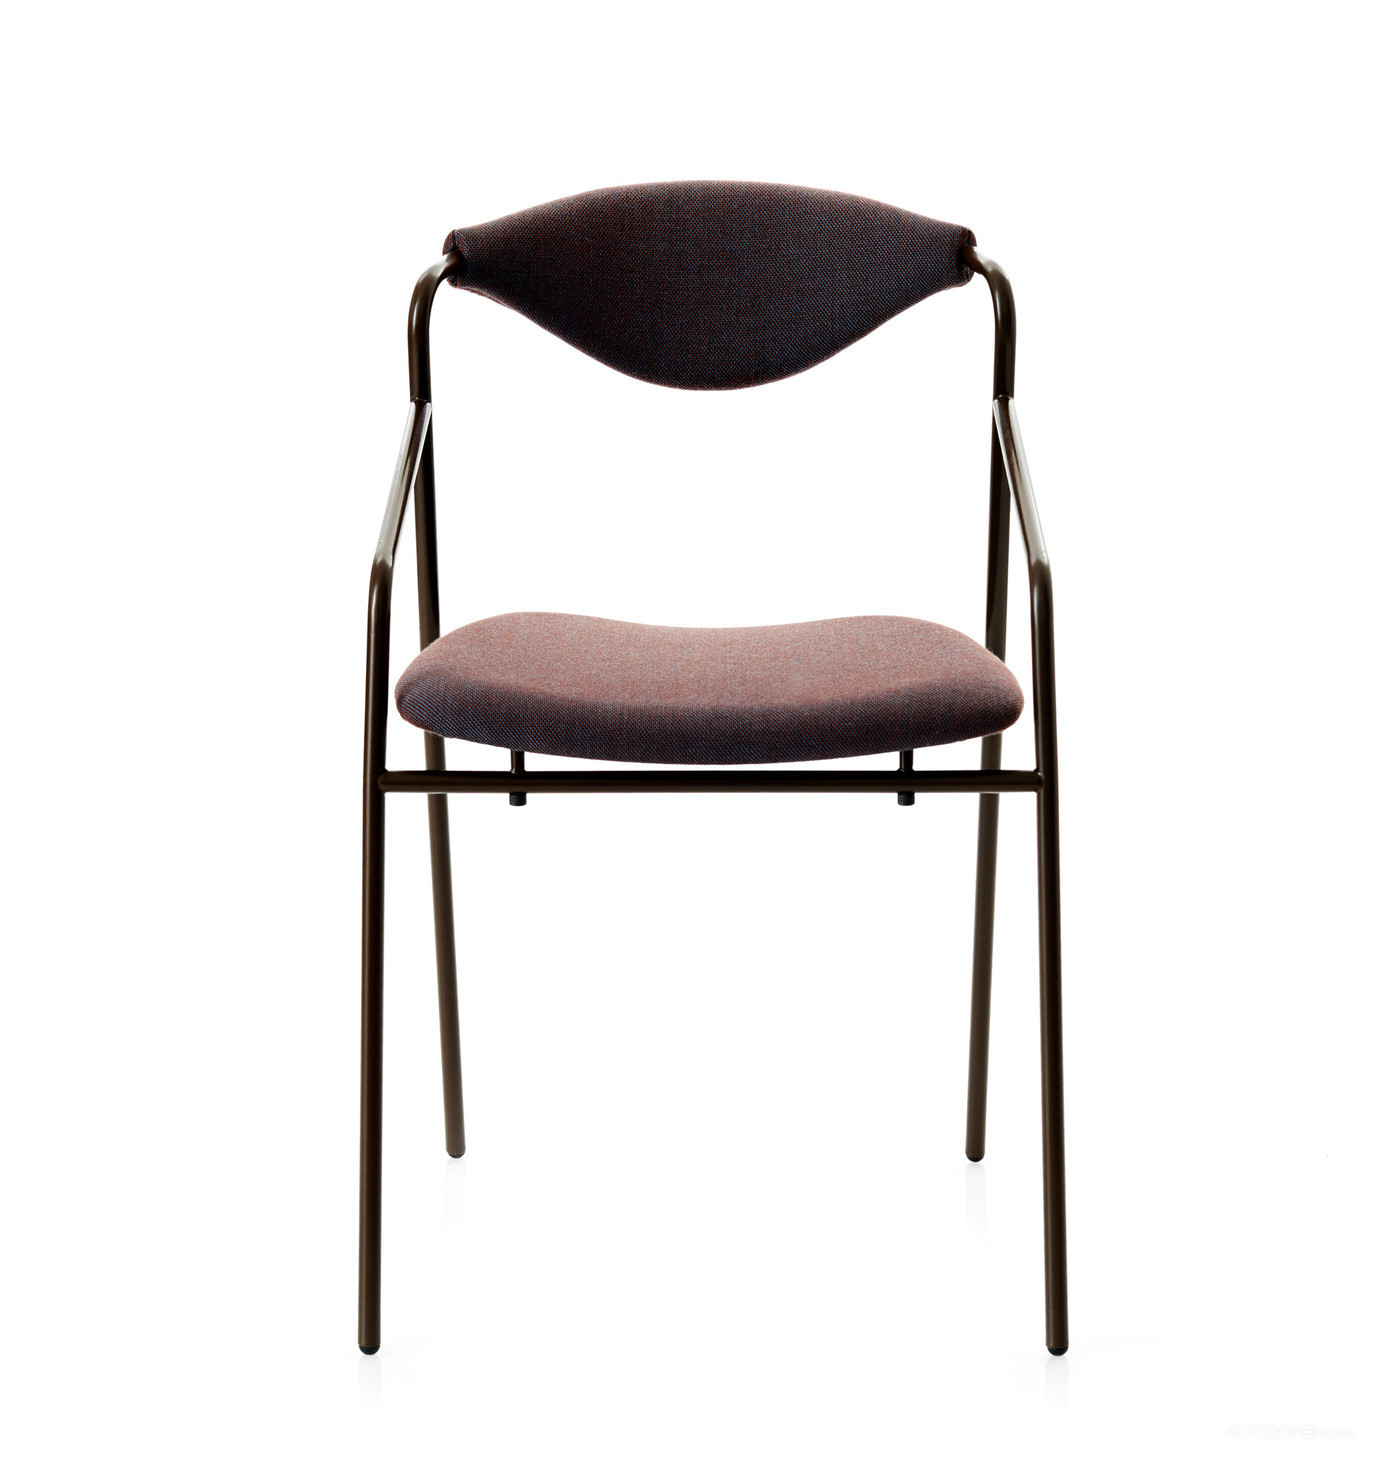 高清极简现代钢管椅家具设计欣赏图片-02